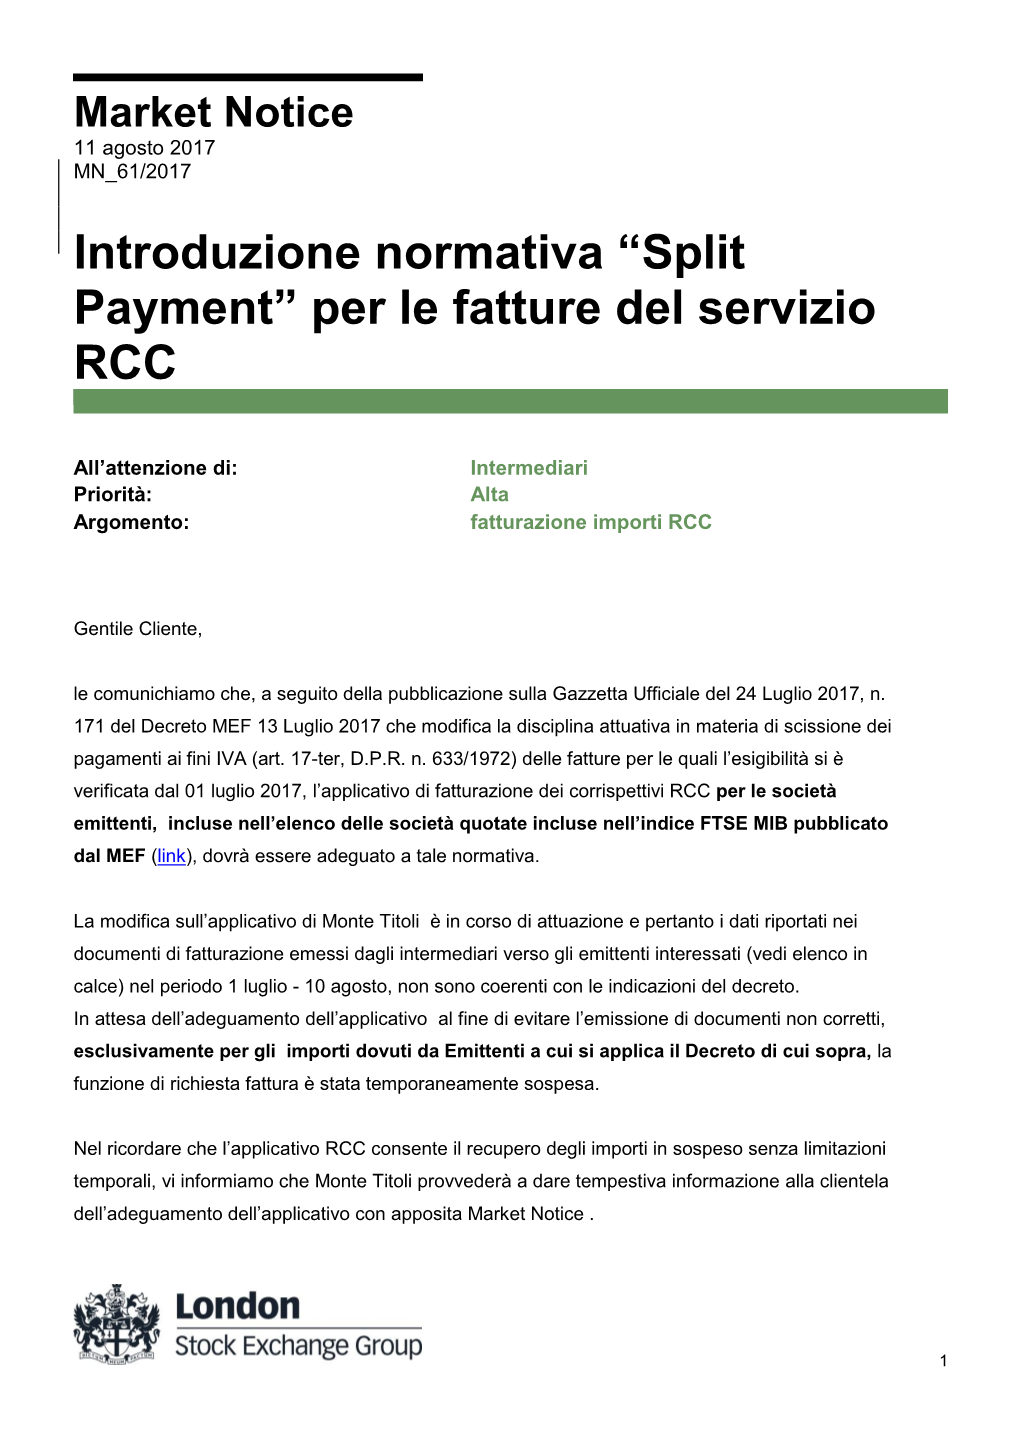 Introduzione Normativa “Split Payment” Per Le Fatture Del Servizio RCC